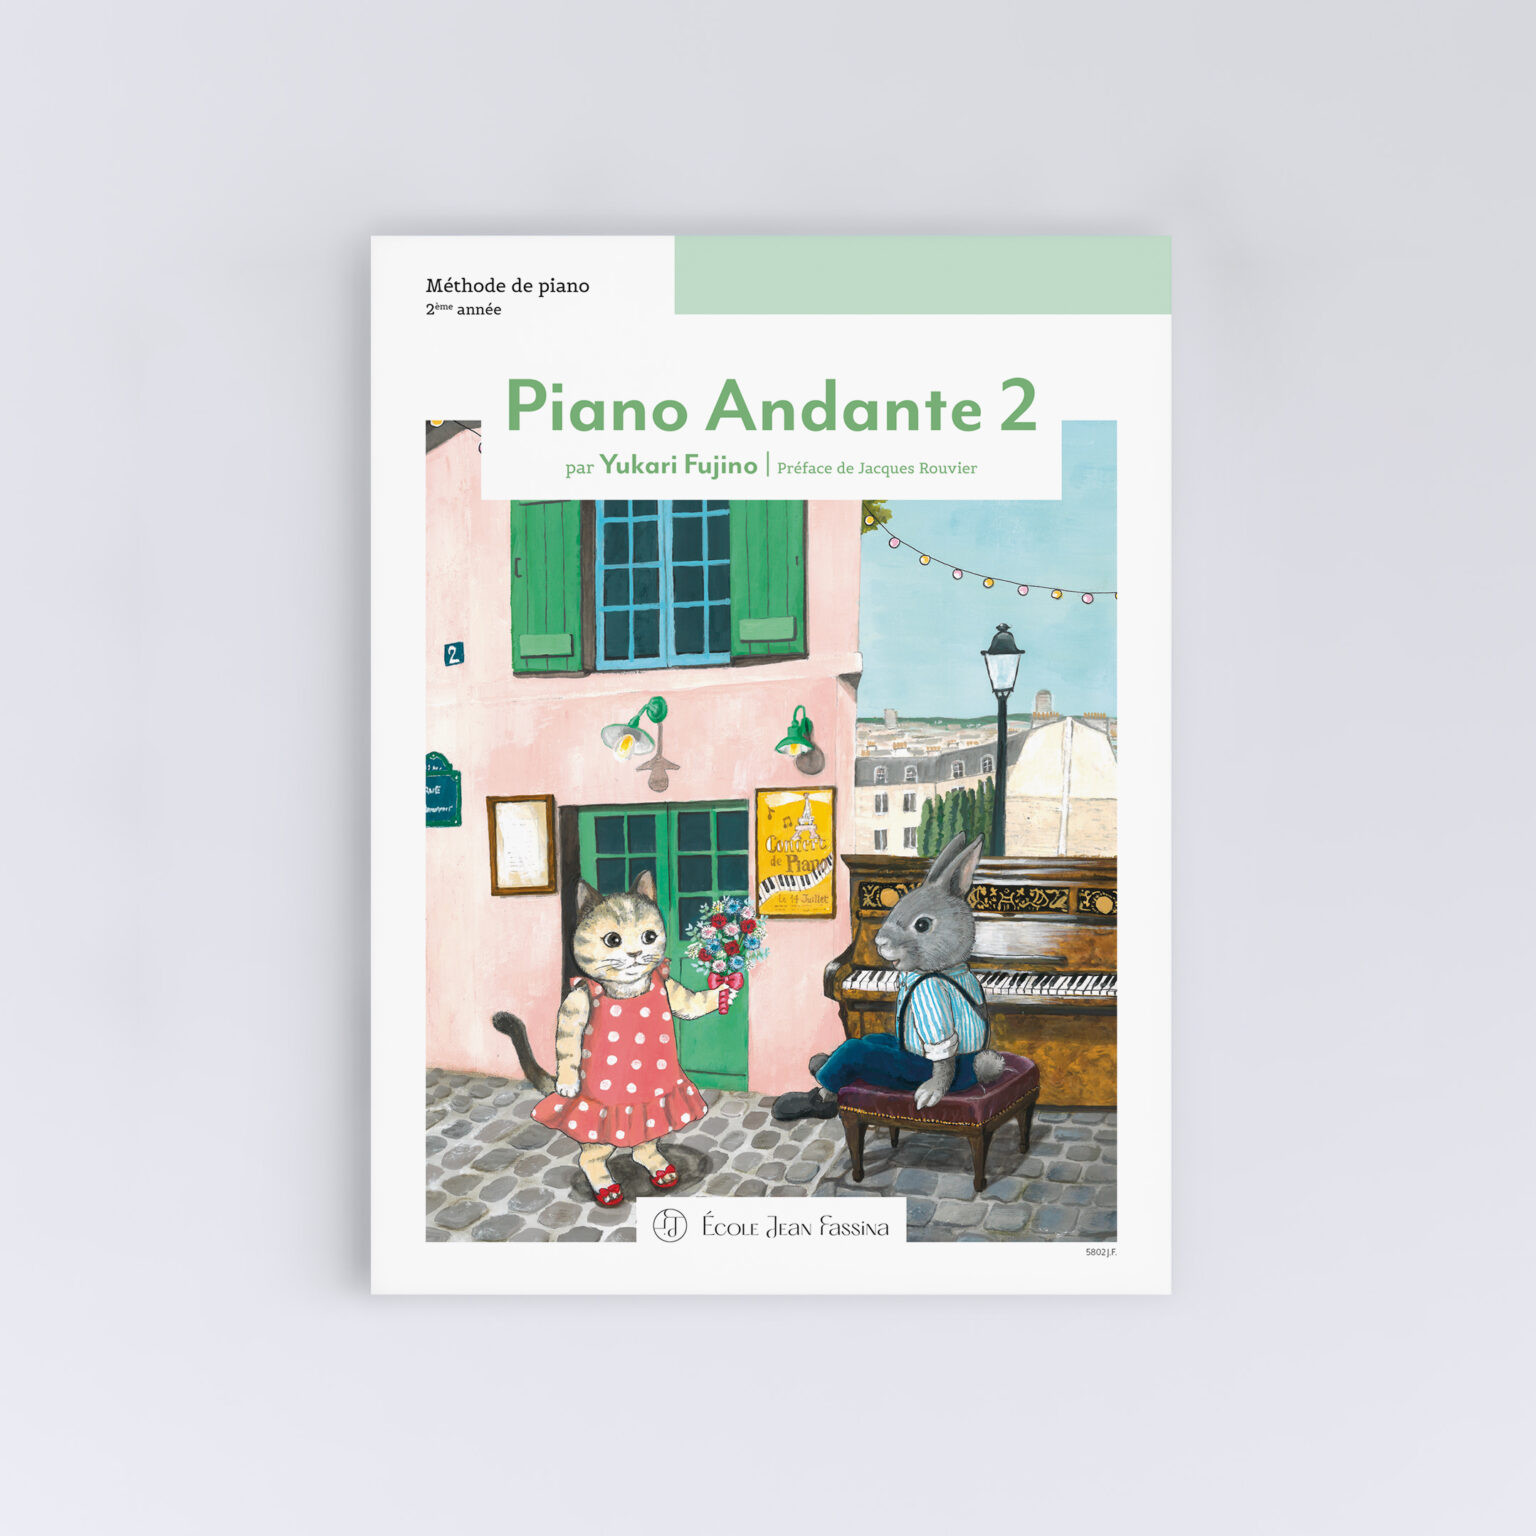 Partitions piano facile pour enfants: 30 chansons claires à apprendre  (Paperback)